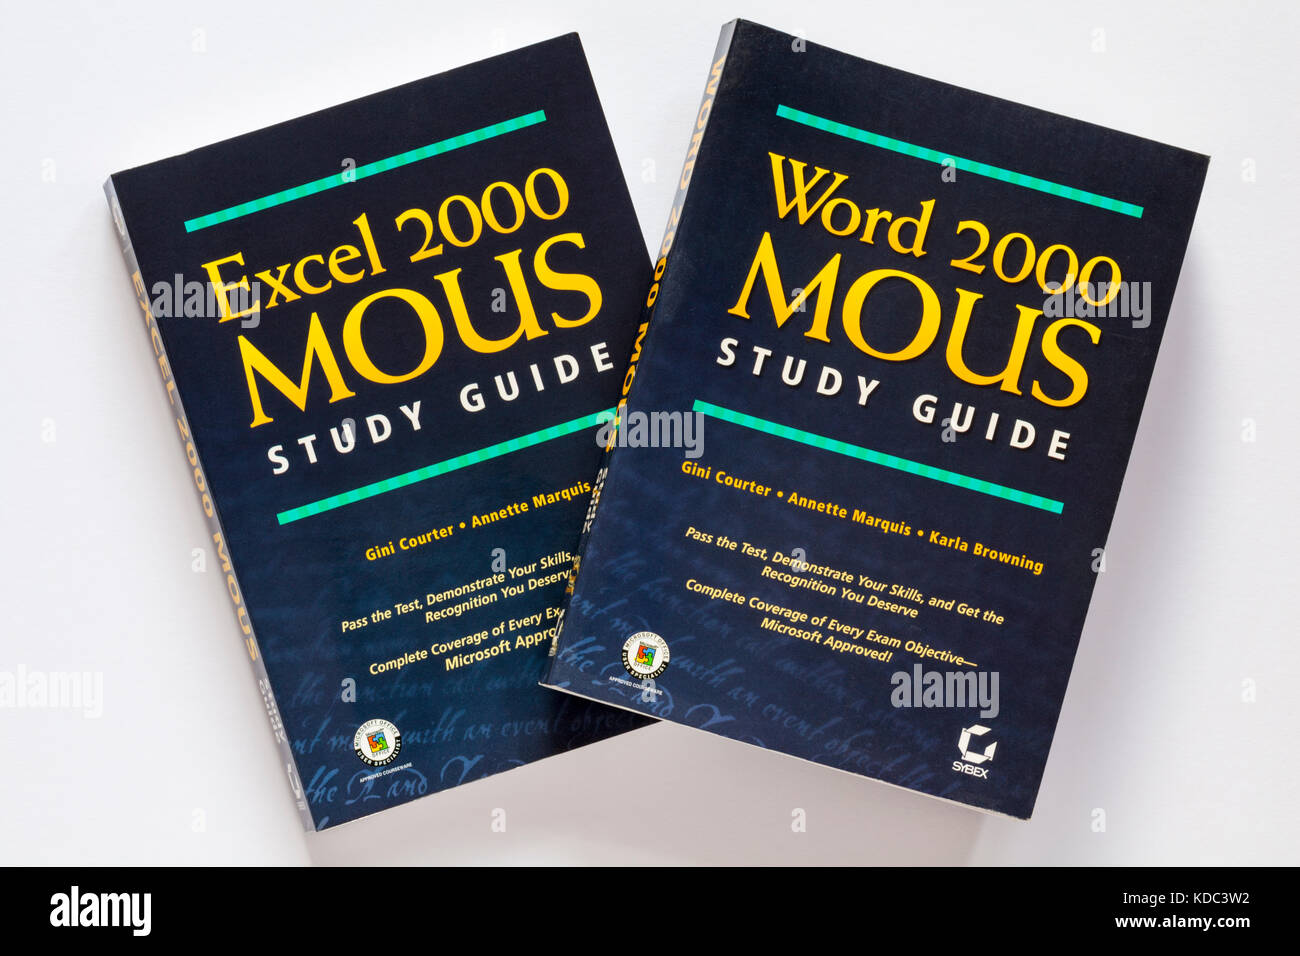 Word 2000 Guide d'étude et des protocoles d'Excel 2000 Protocoles d'étude guide books sur fond blanc Banque D'Images